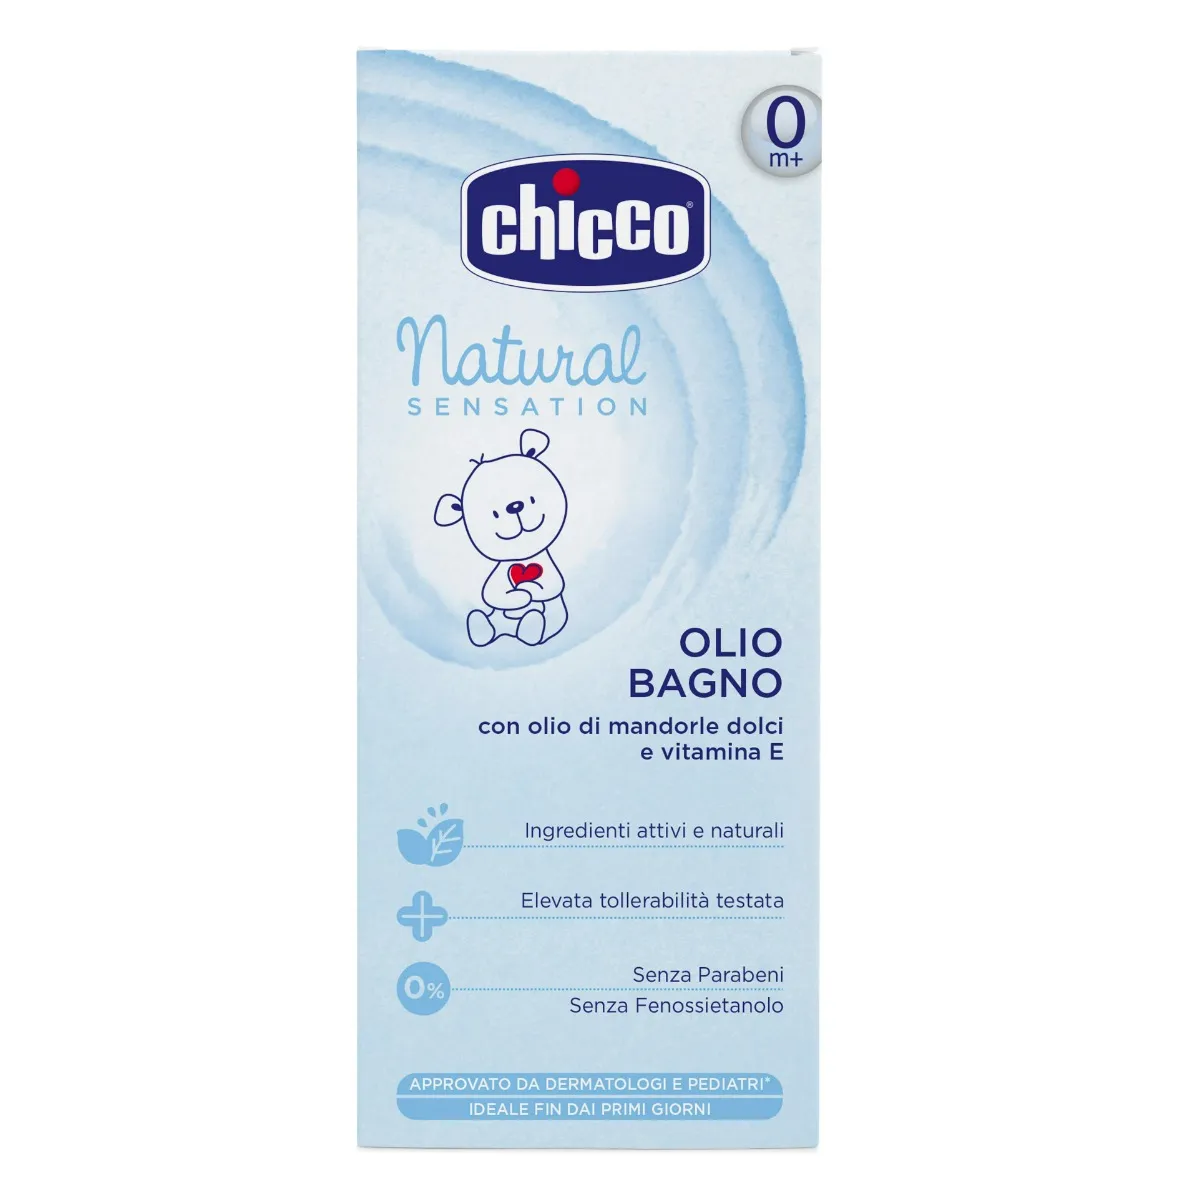 Chicco Natural Sensation Olio Bagno 200 Ml 200 ml